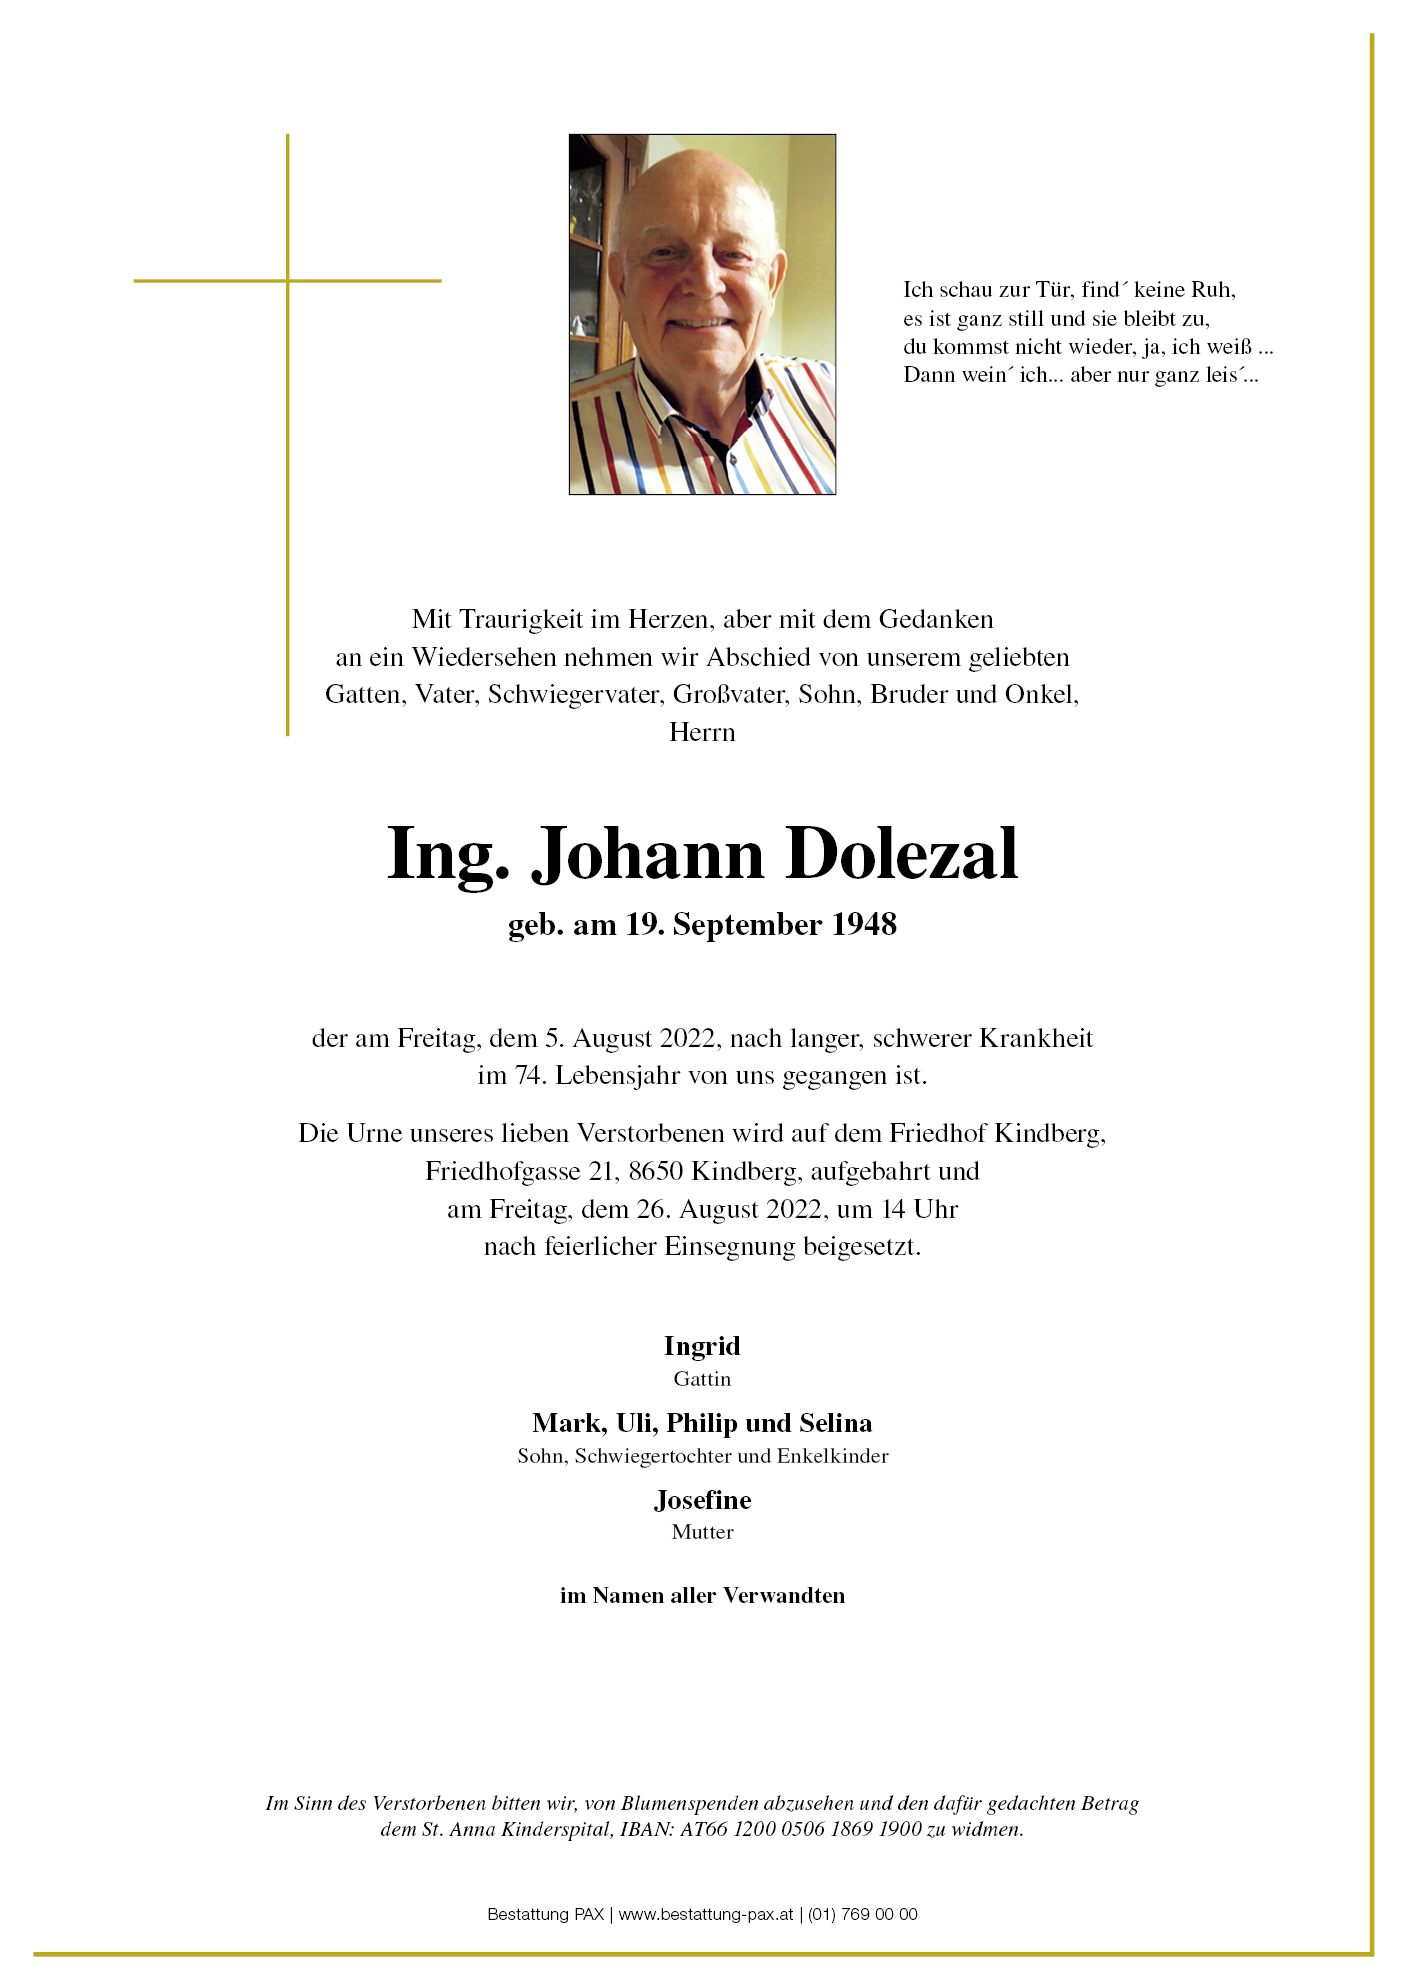 Ing. Johann Dolezal